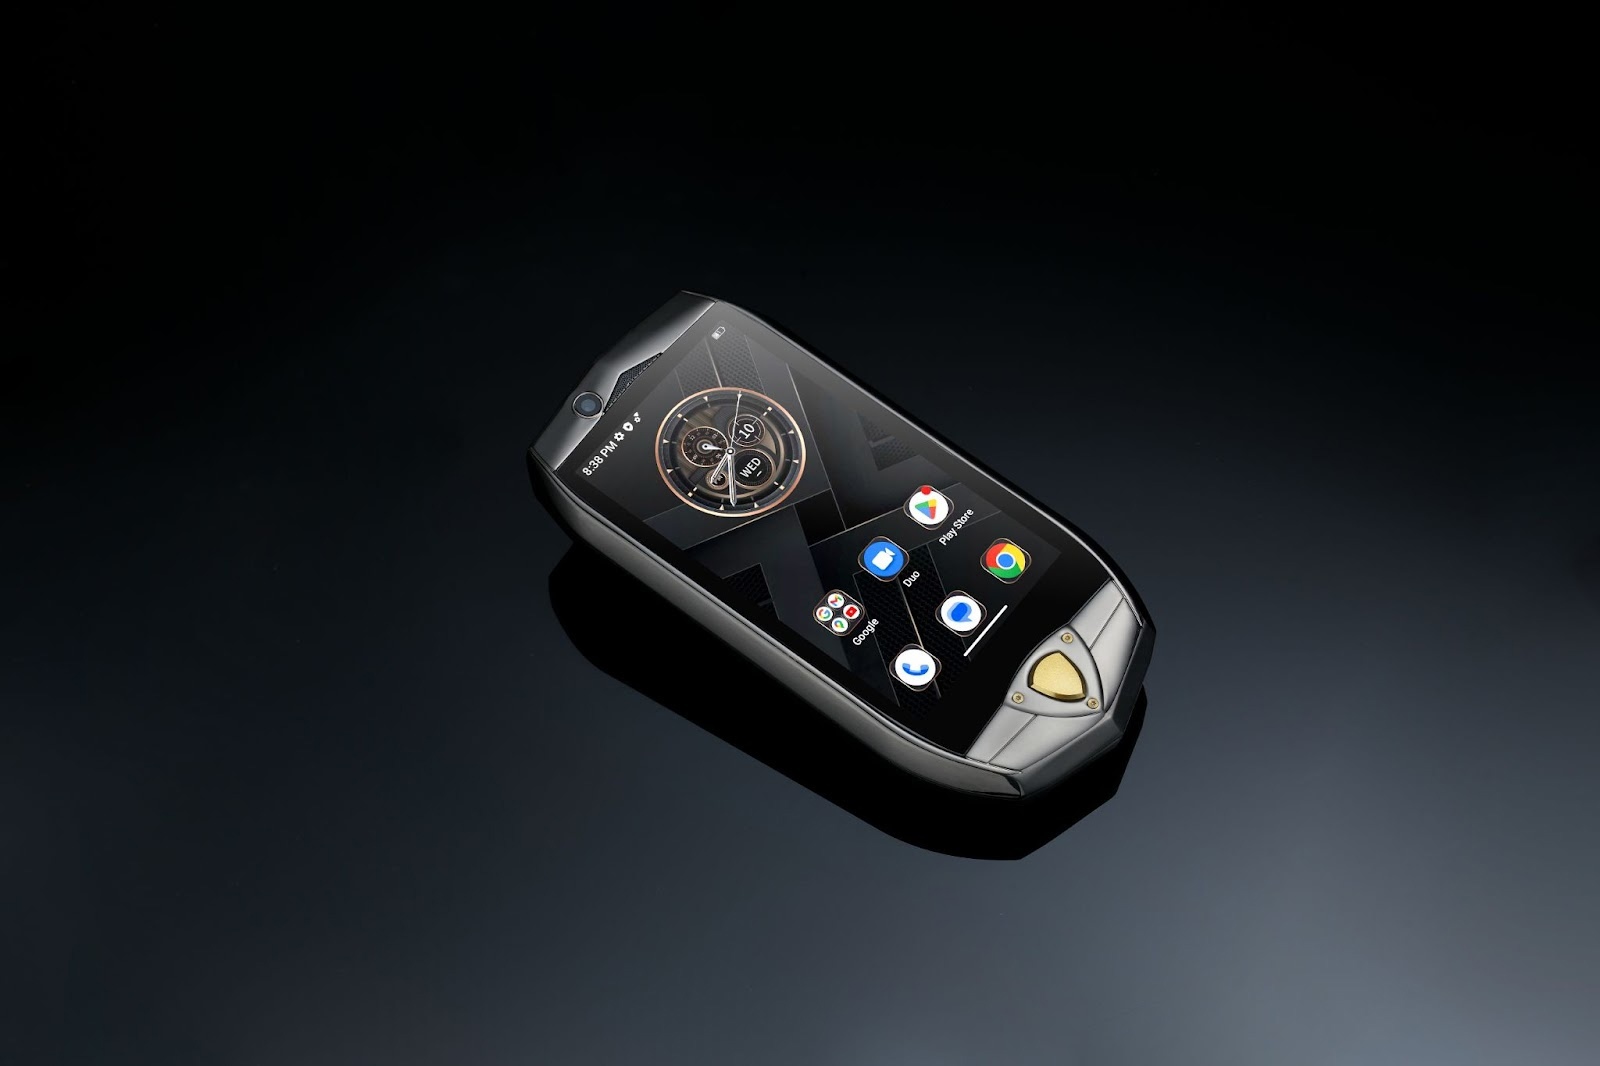 Новое поколение бизнес-мини-смартфонов Oukitel Oukitel K16 выходит 22 мая